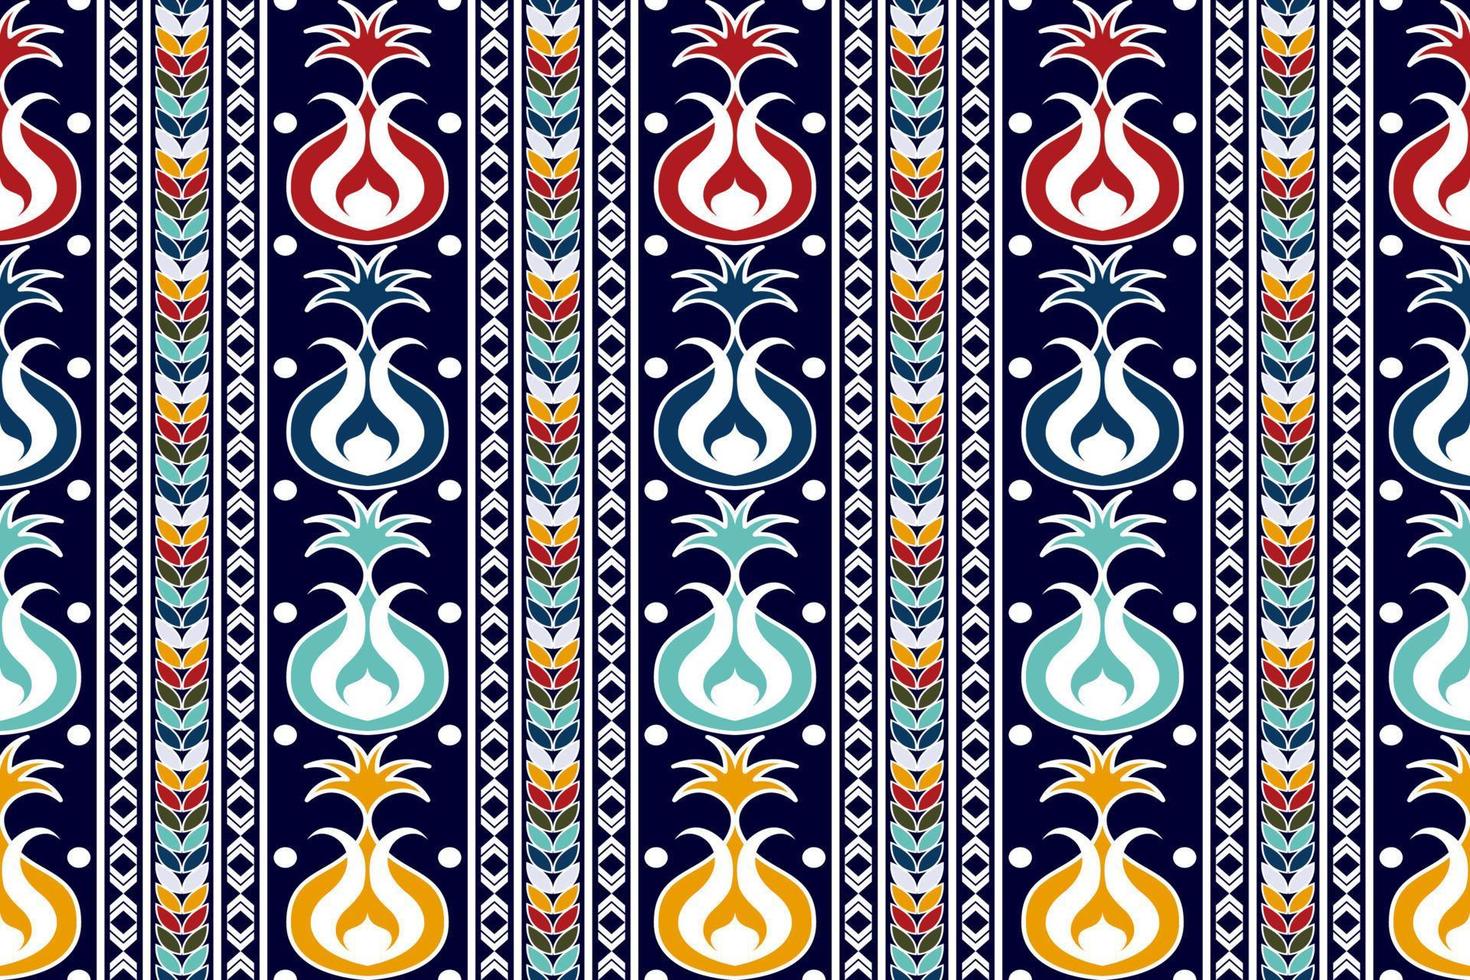 conception de motif textile ethnique sans couture ikat. tapis en tissu aztèque ornements de mandala décorations textiles papier peint. fond de vecteur de broderie traditionnelle de dinde indigène boho tribal.